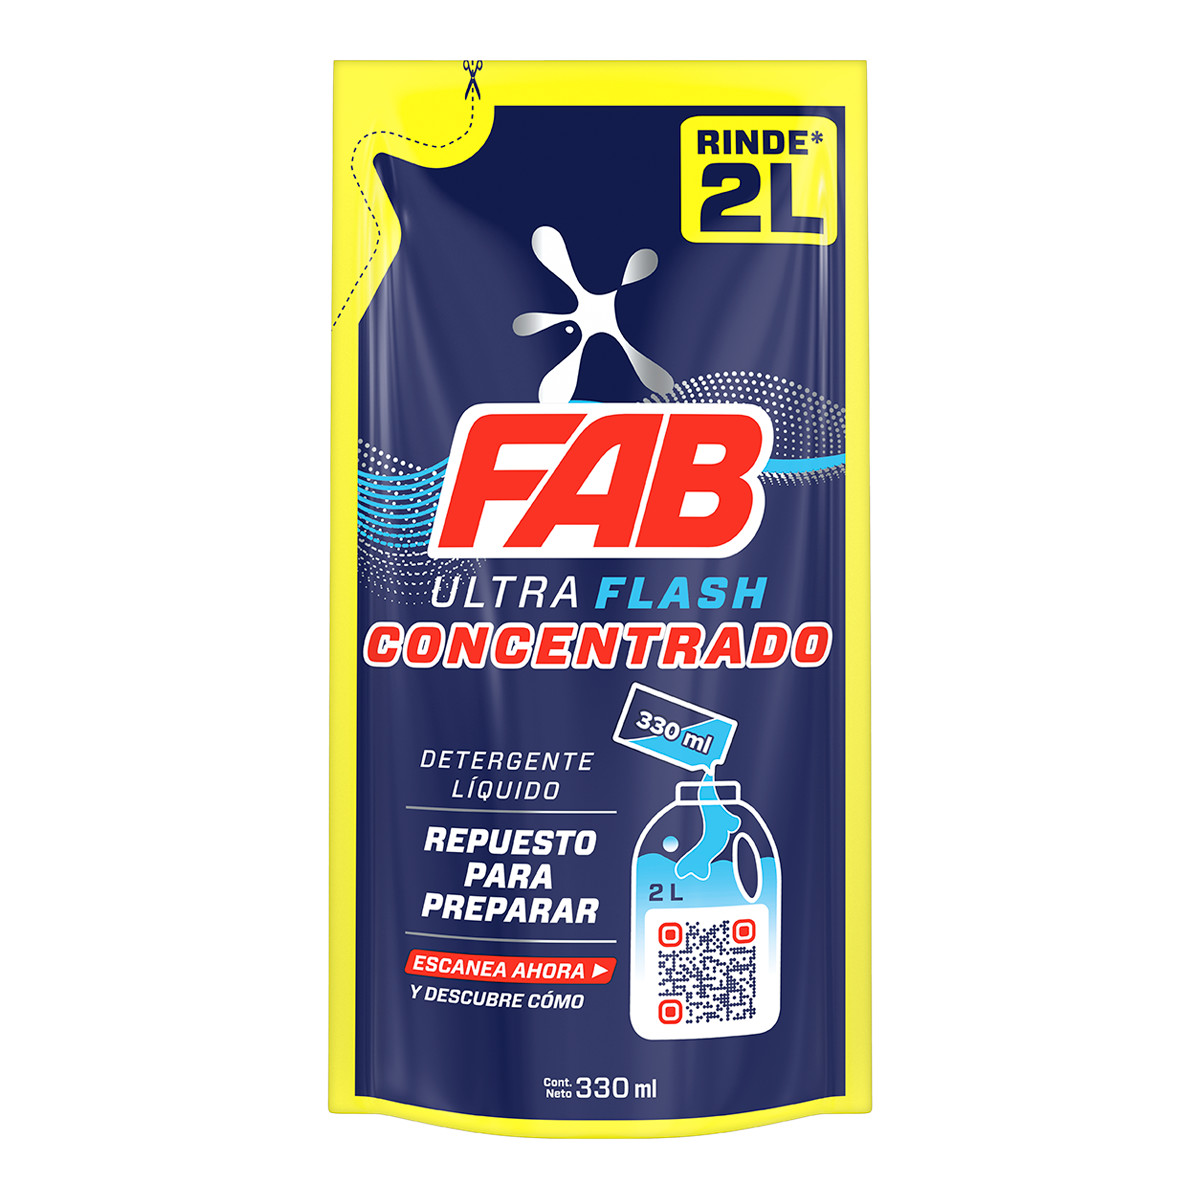 FAB Ultra Flash Concentrado para preparar (Repuesto para preparar)